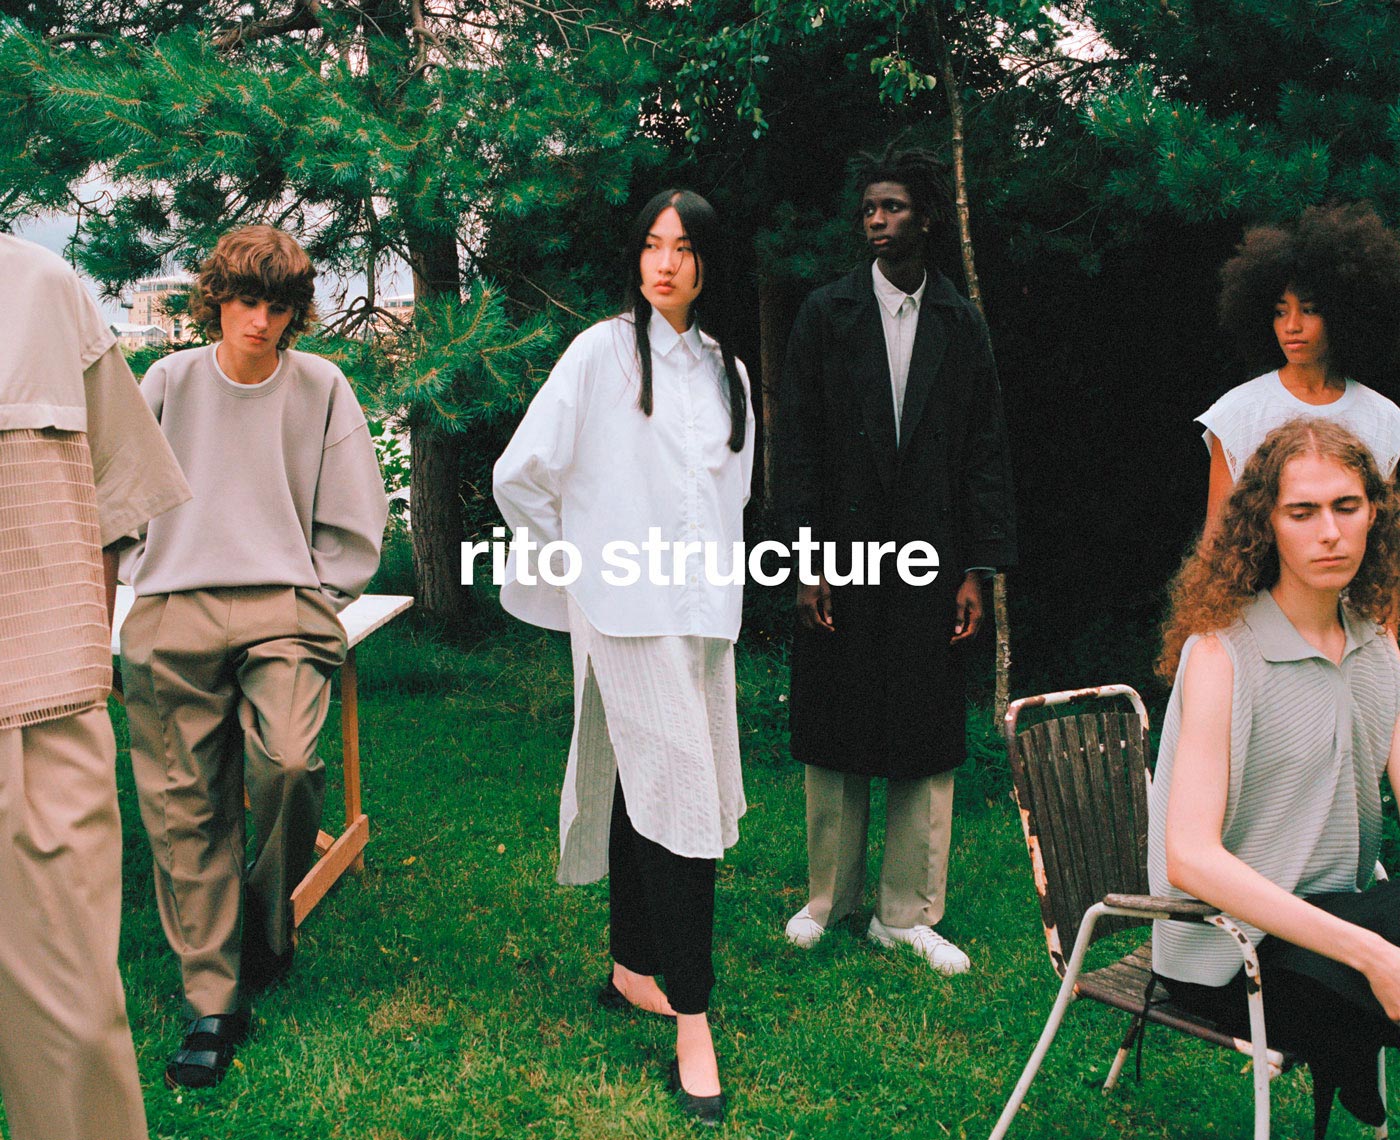 Rito Structure – Art Direction